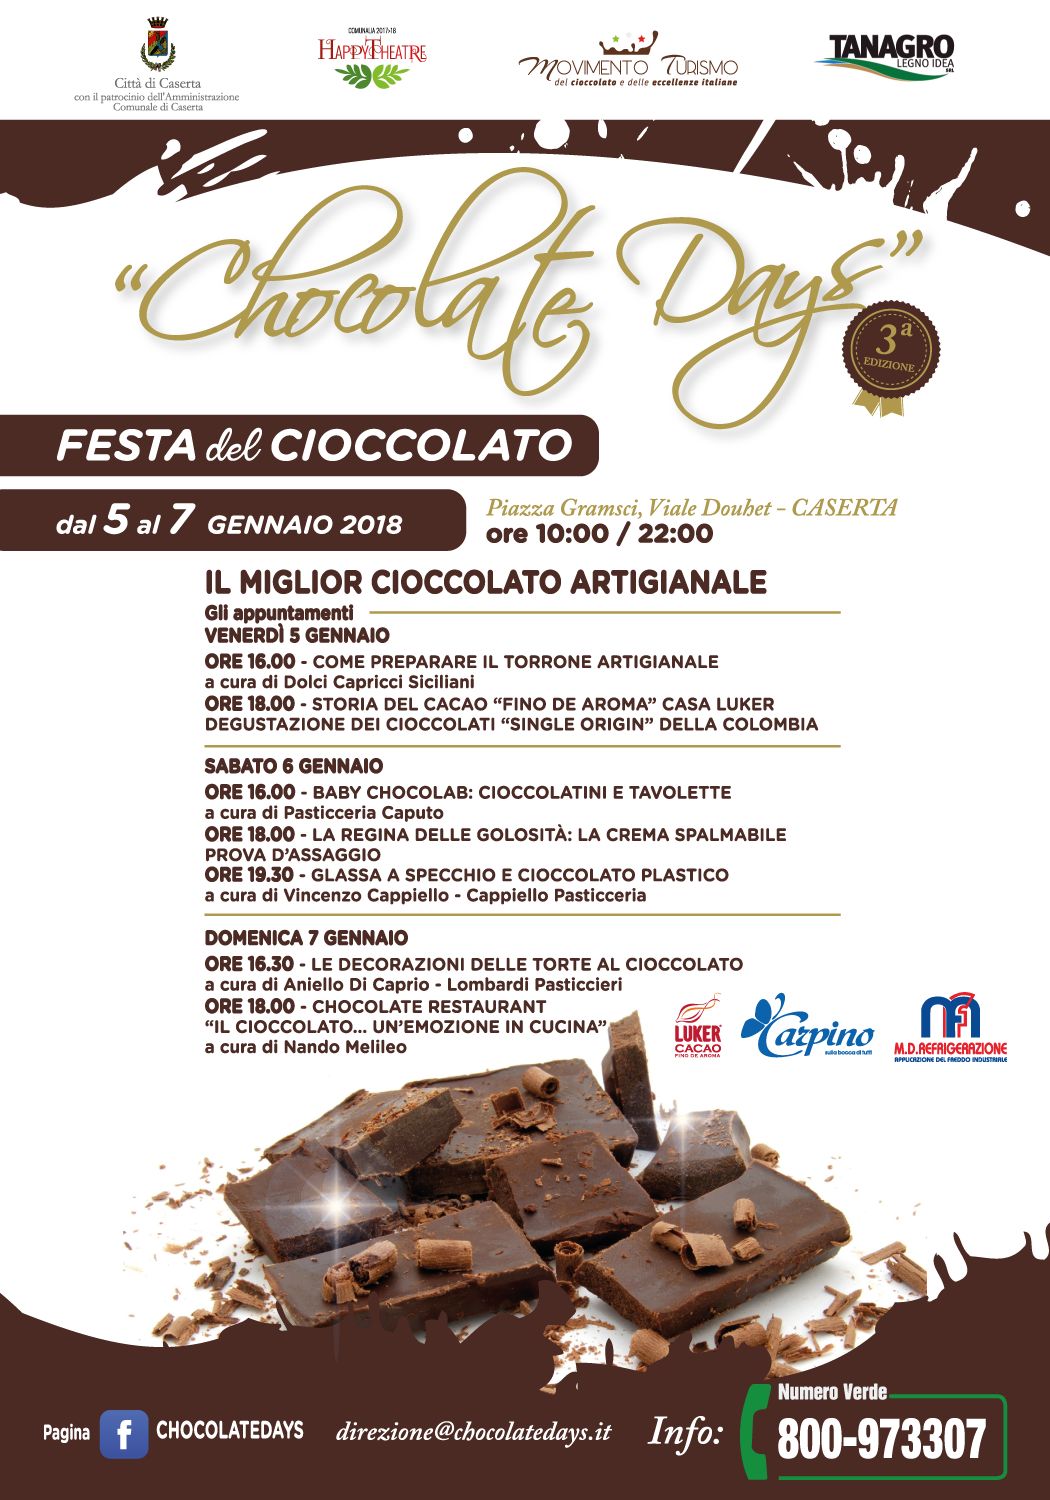 Caserta: Happy Theatre e la tre giorni dedicata al cioccolato